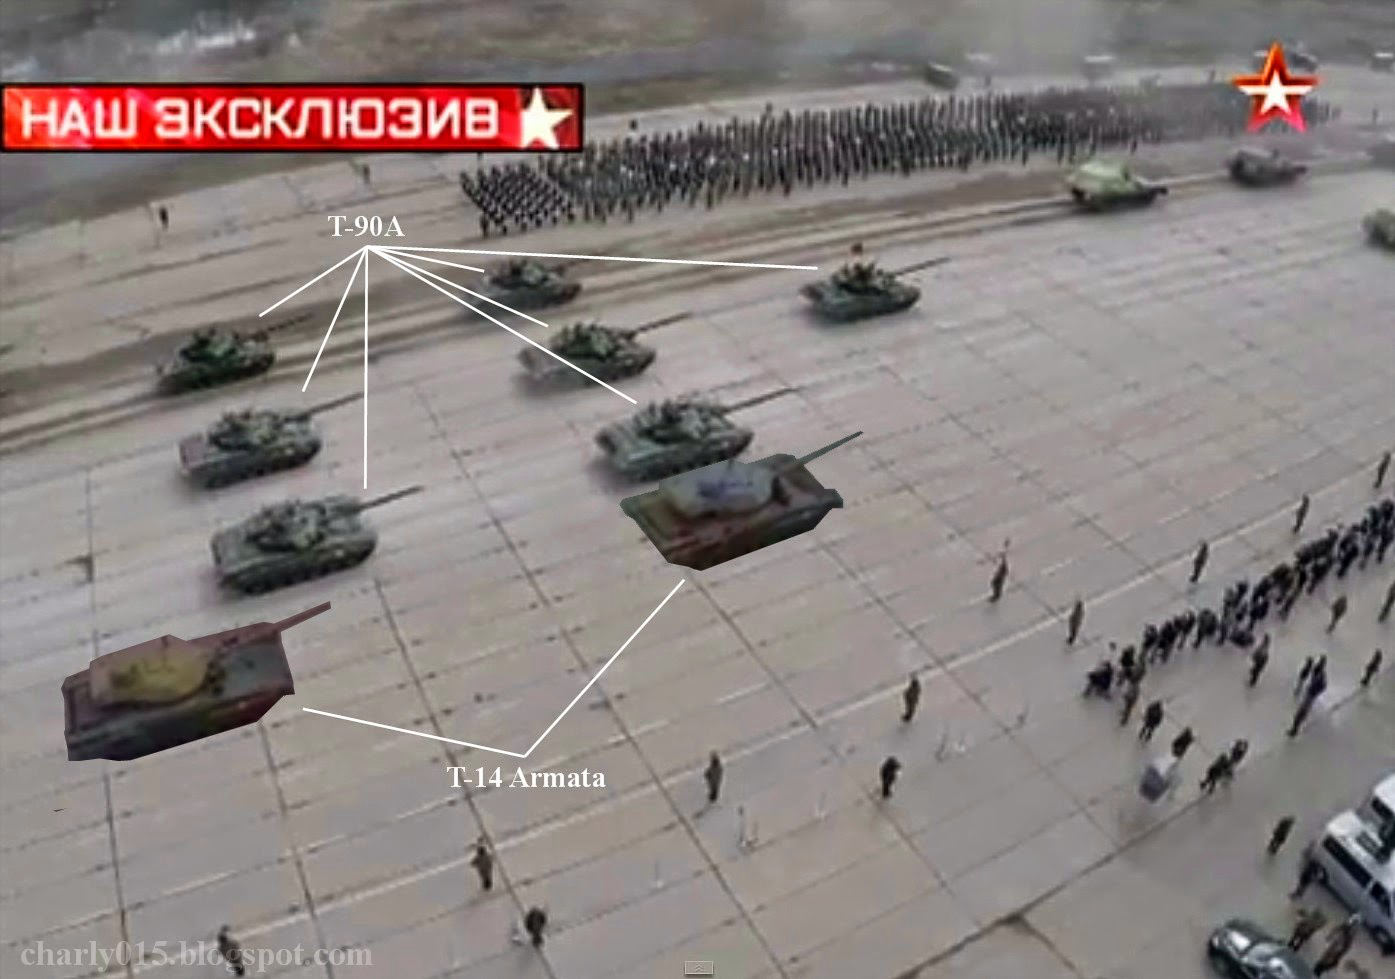 Les secrets du nouveau char russe T-14 Armata